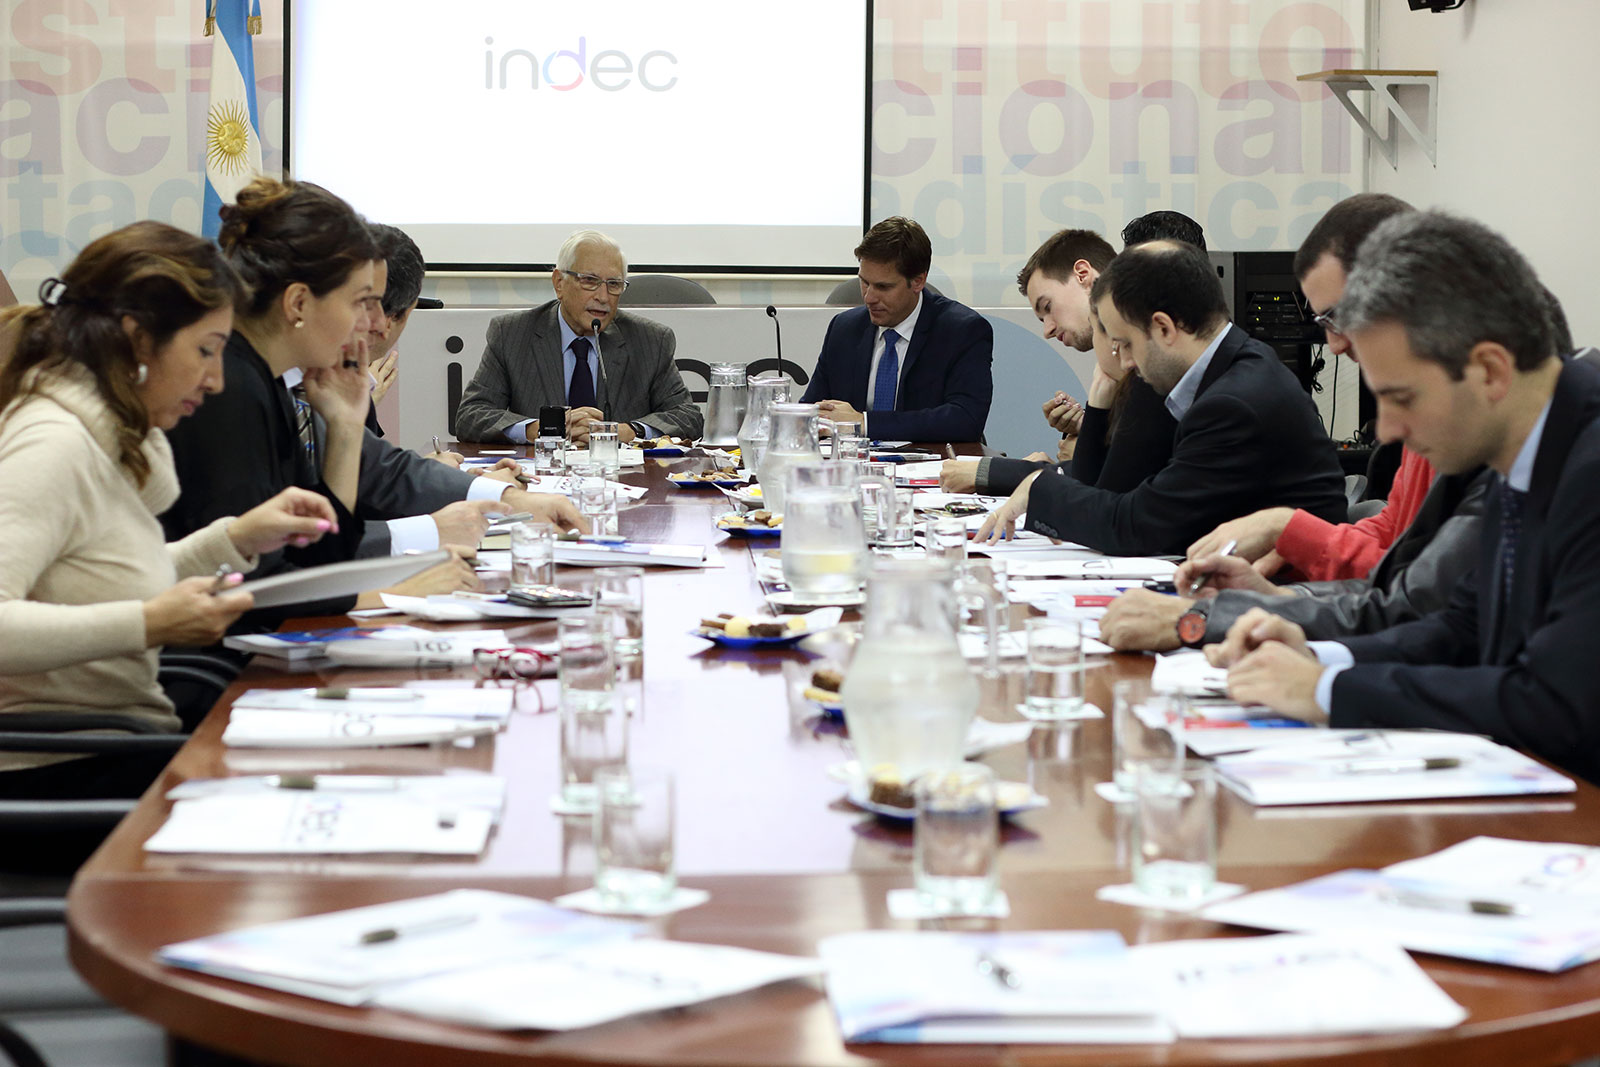 26/7/17. Reunión informativa del INDEC con representantes de Embajadas.